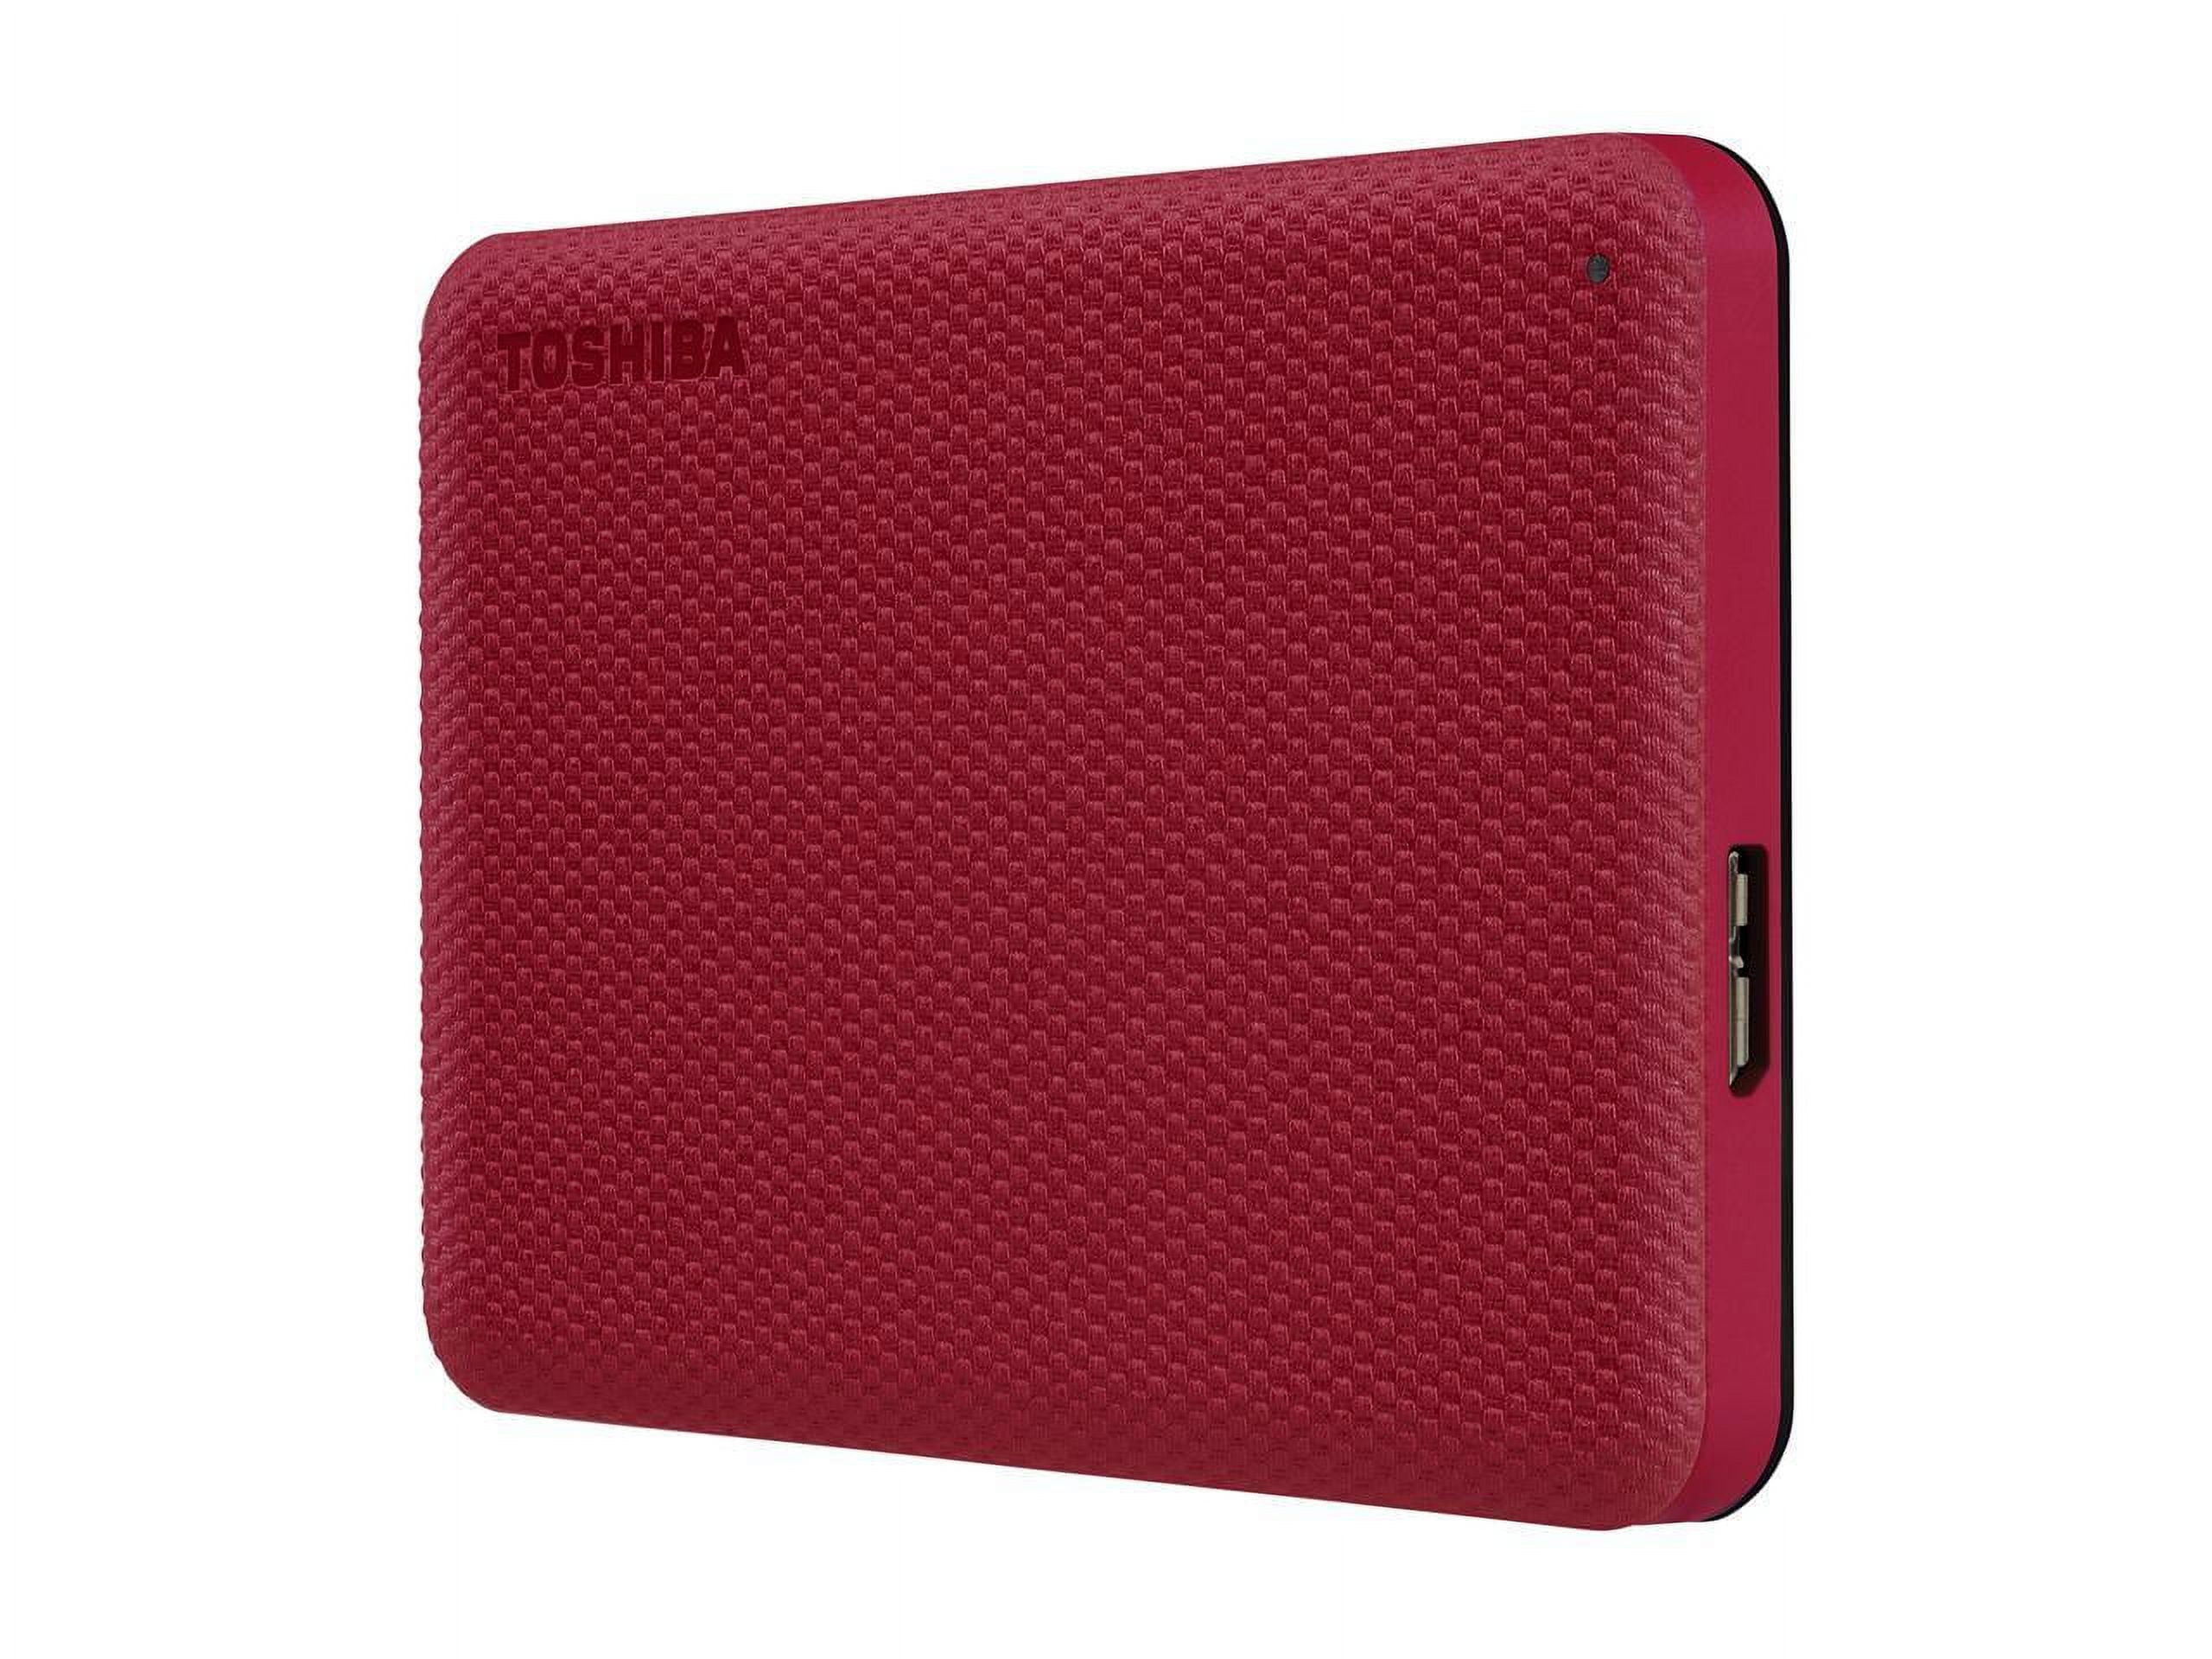 RED Hard Toshiba Drive Portable 1TB Advance Canvio